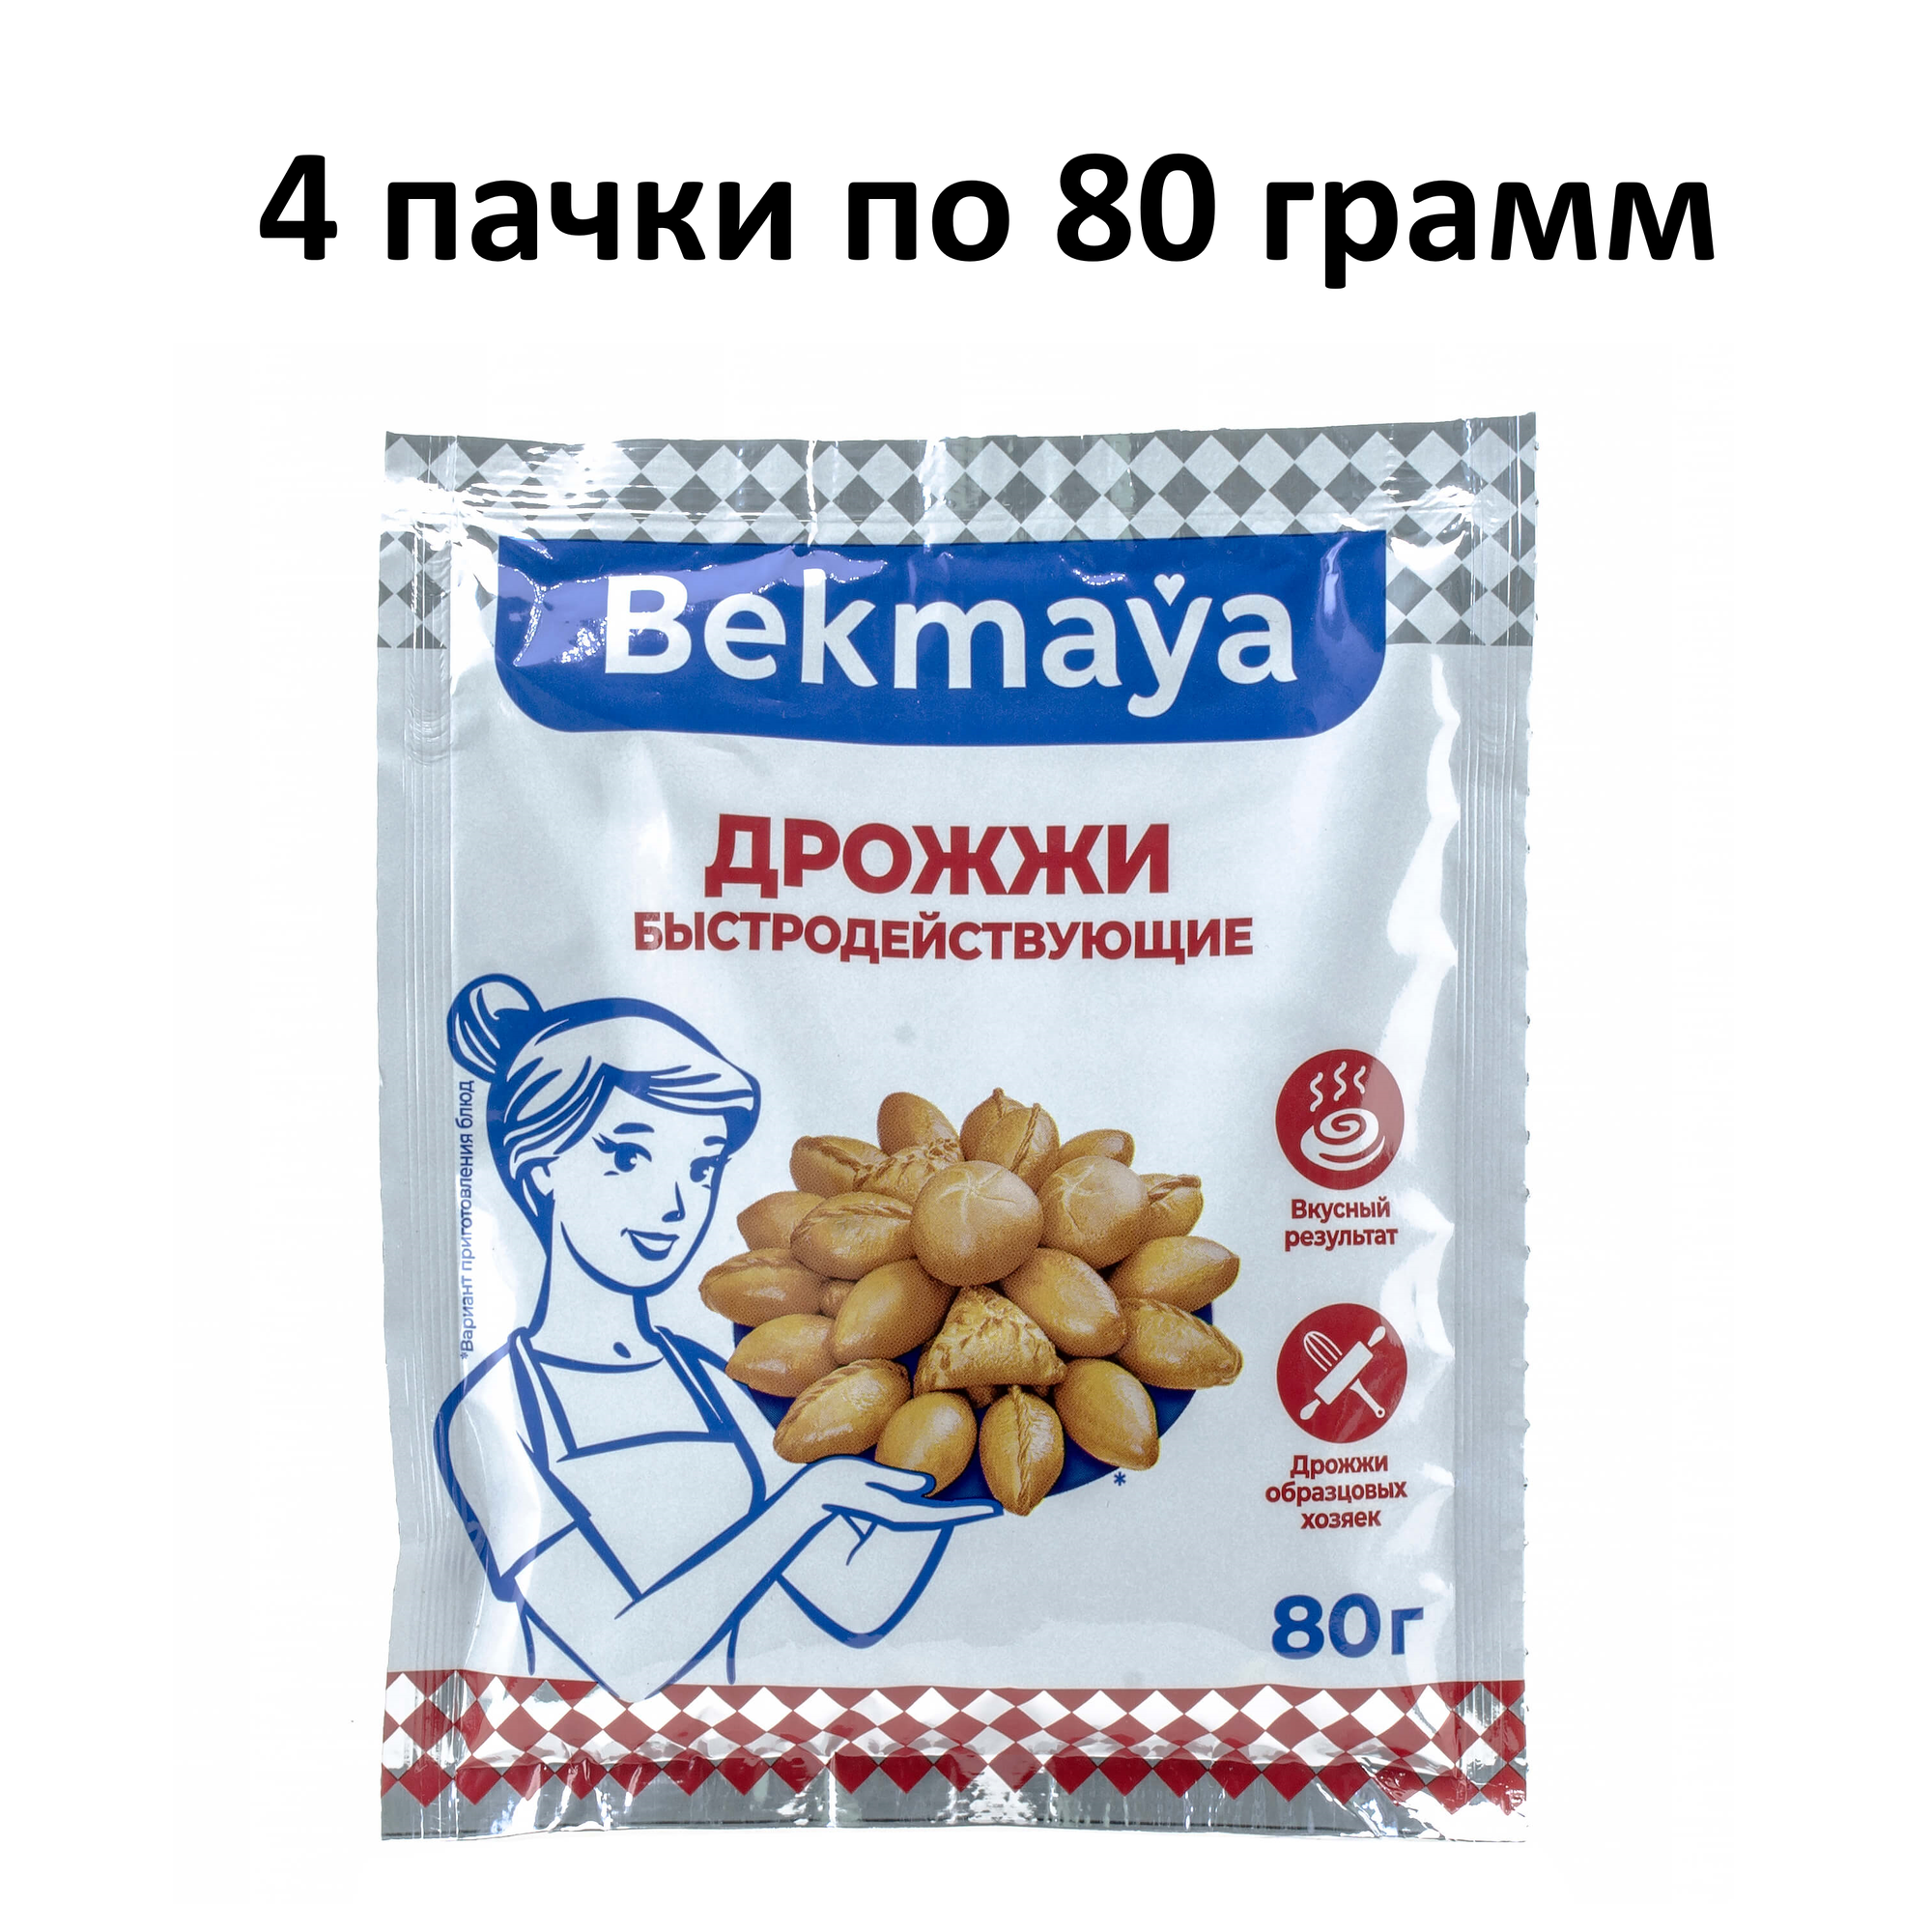 Дрожжи Bekmaya (Бекмая) сухие активные спиртовые хлебопекарные, 4х80 гр